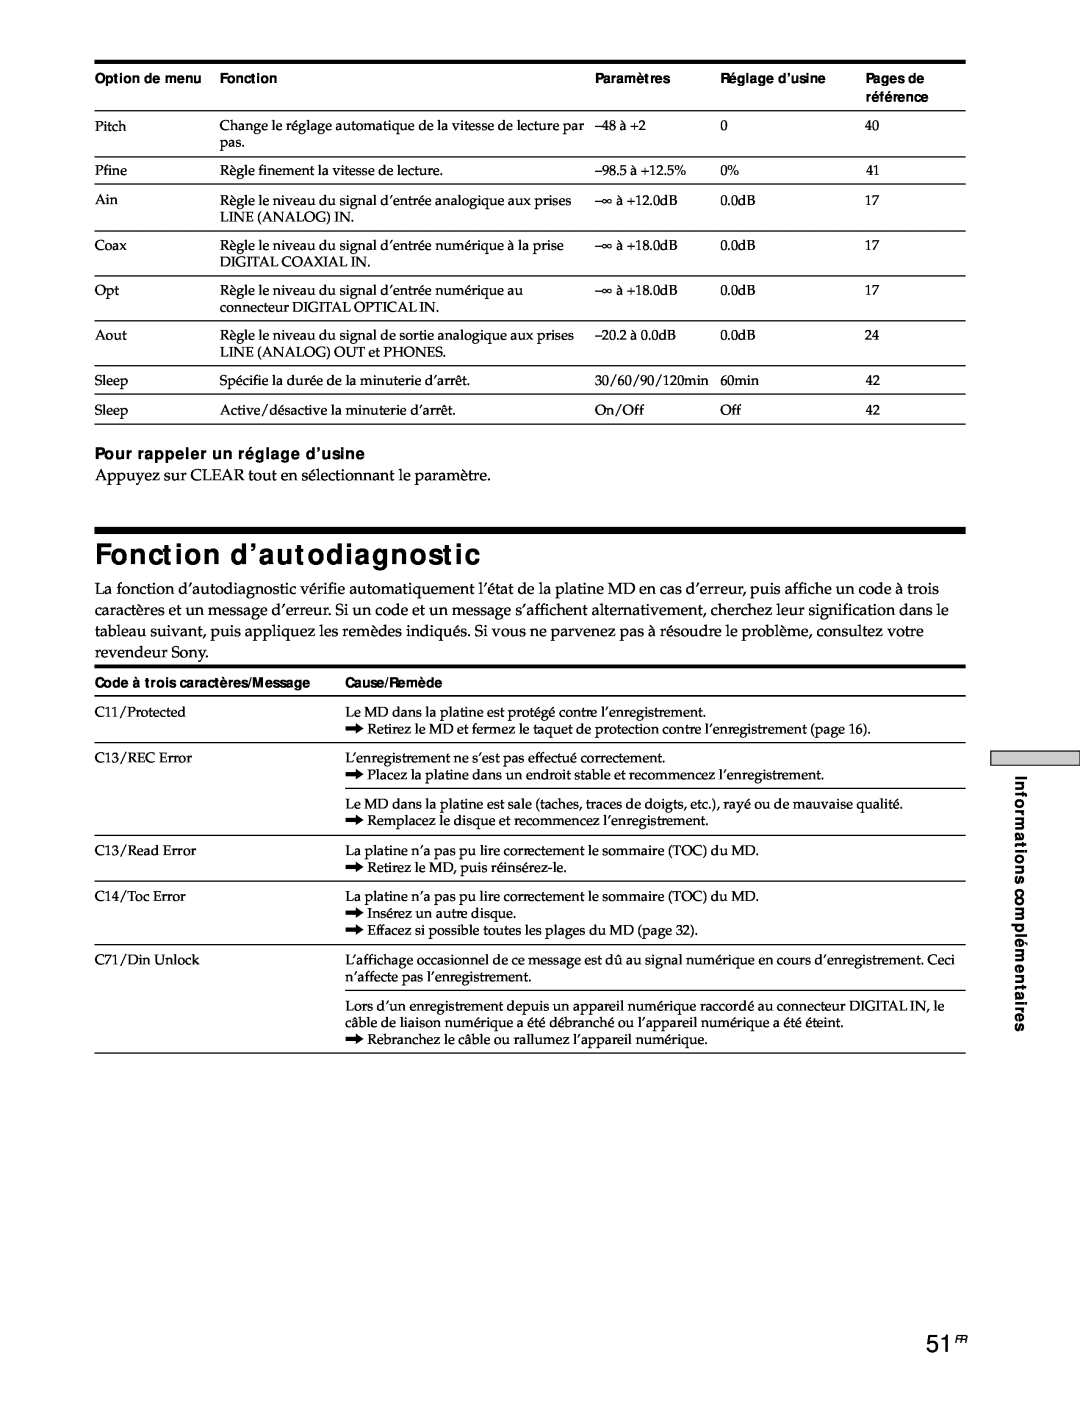 Sony MDS-JE530 manual Fonction d’autodiagnostic, 51FR 